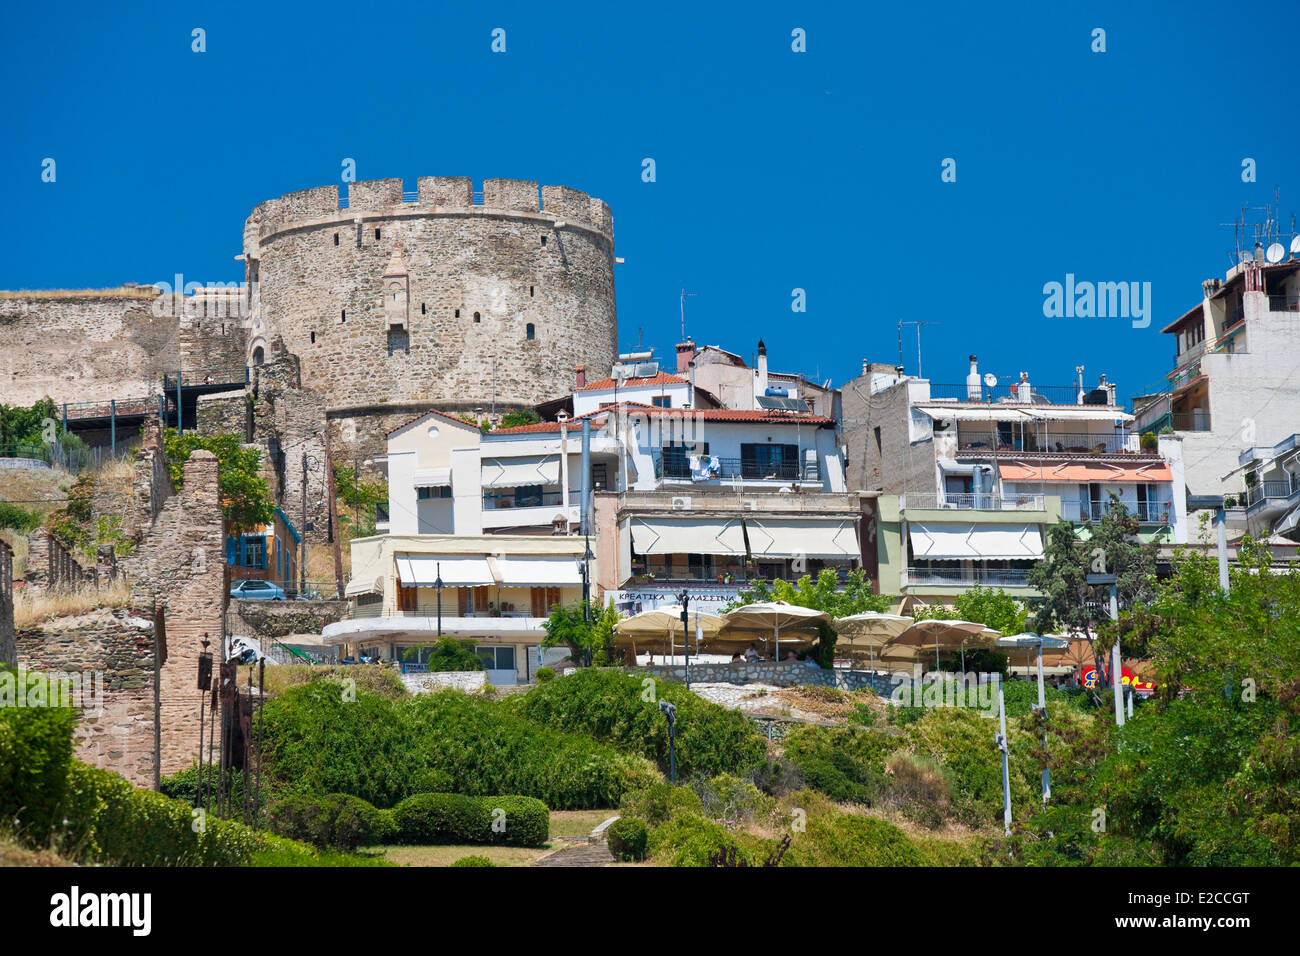 Griechenland, Mazedonien, Thessaloniki, die Stadt bleibt hoch und die byzantinische Zitadelle, die Wände des 4. Jahrhunderts Stockfoto